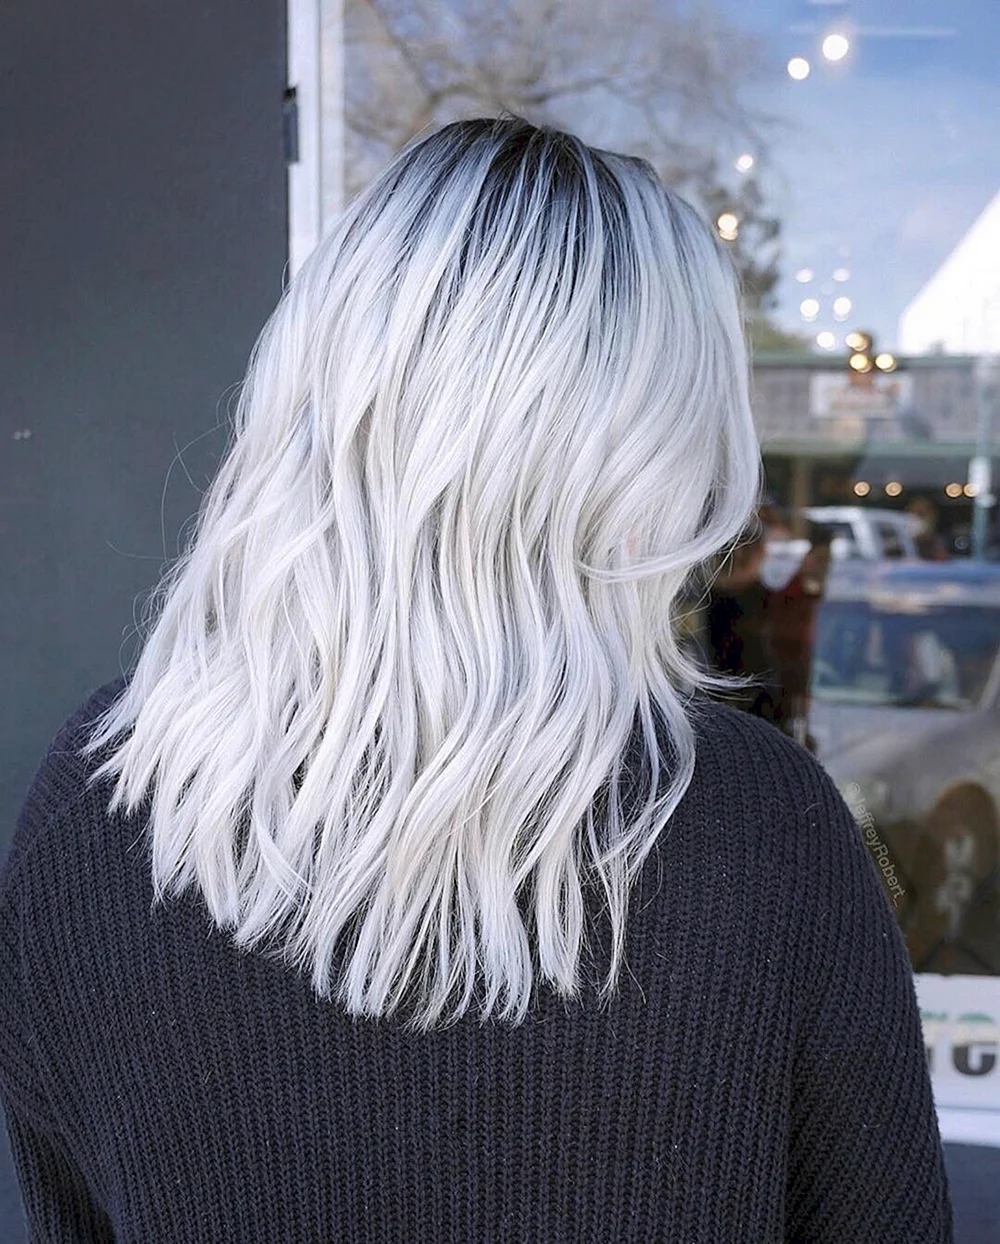 Silver hair underlines